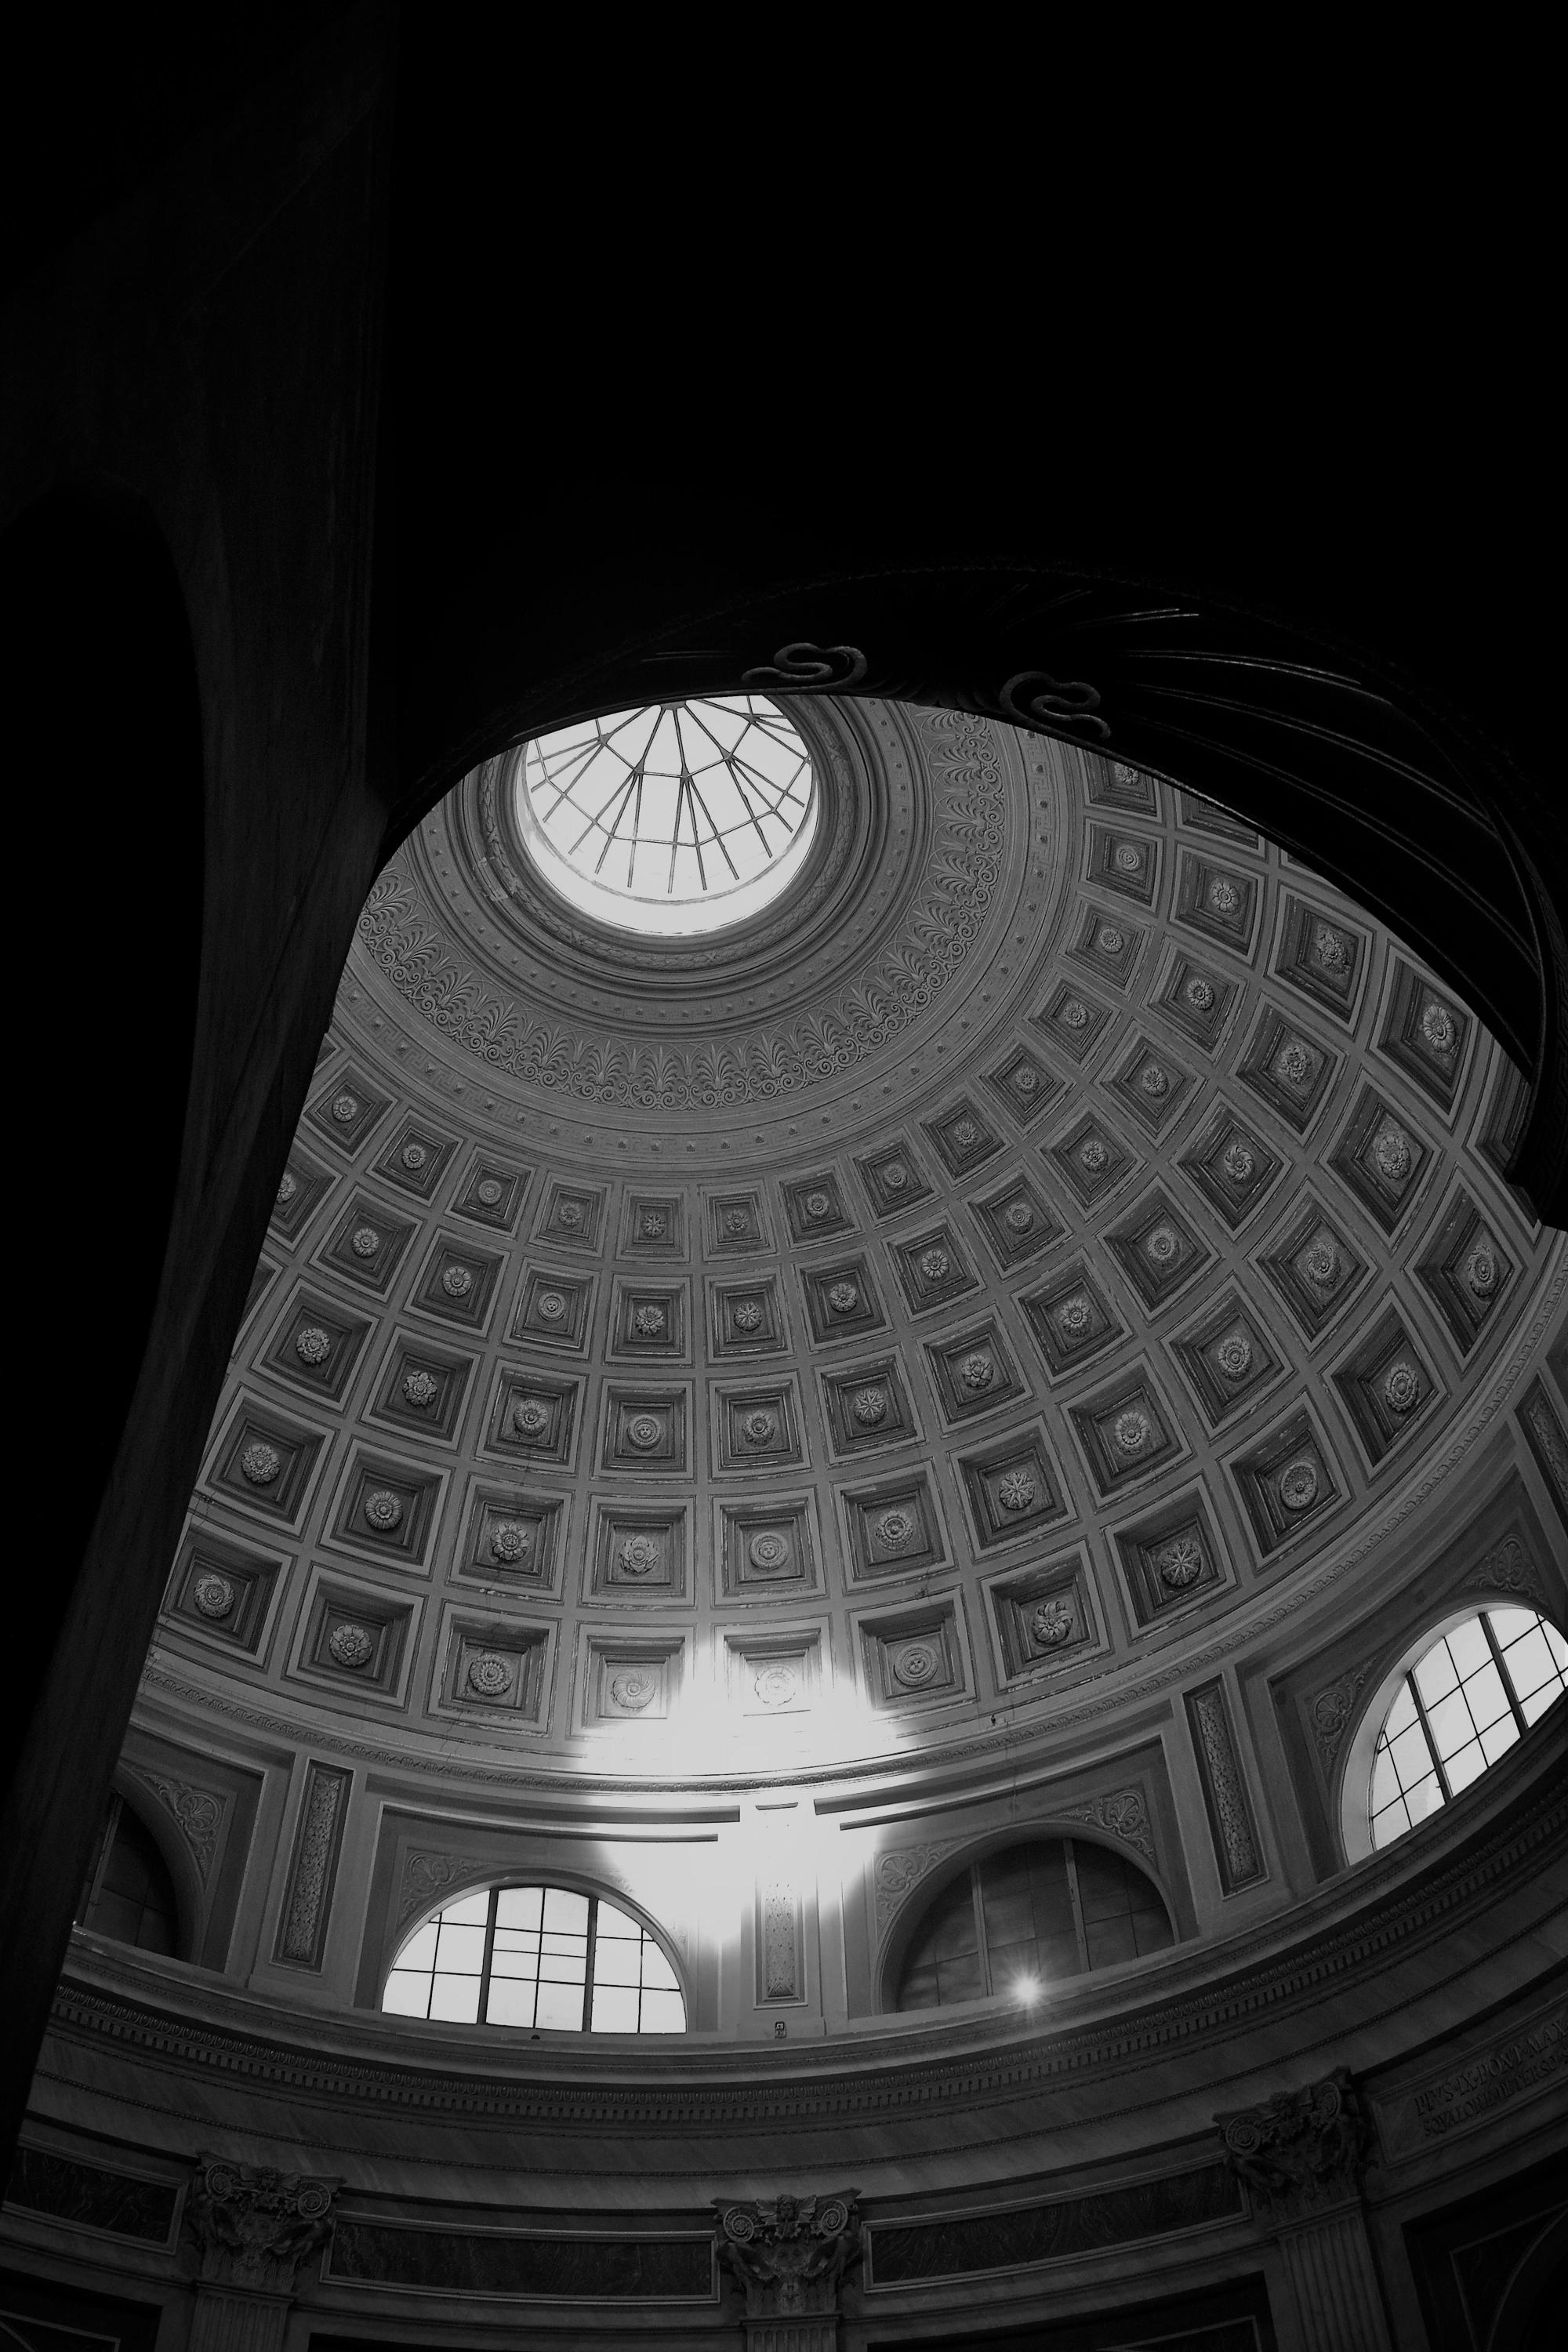 Il pantheon e la sua cupola: un capolavoro ingegneristico